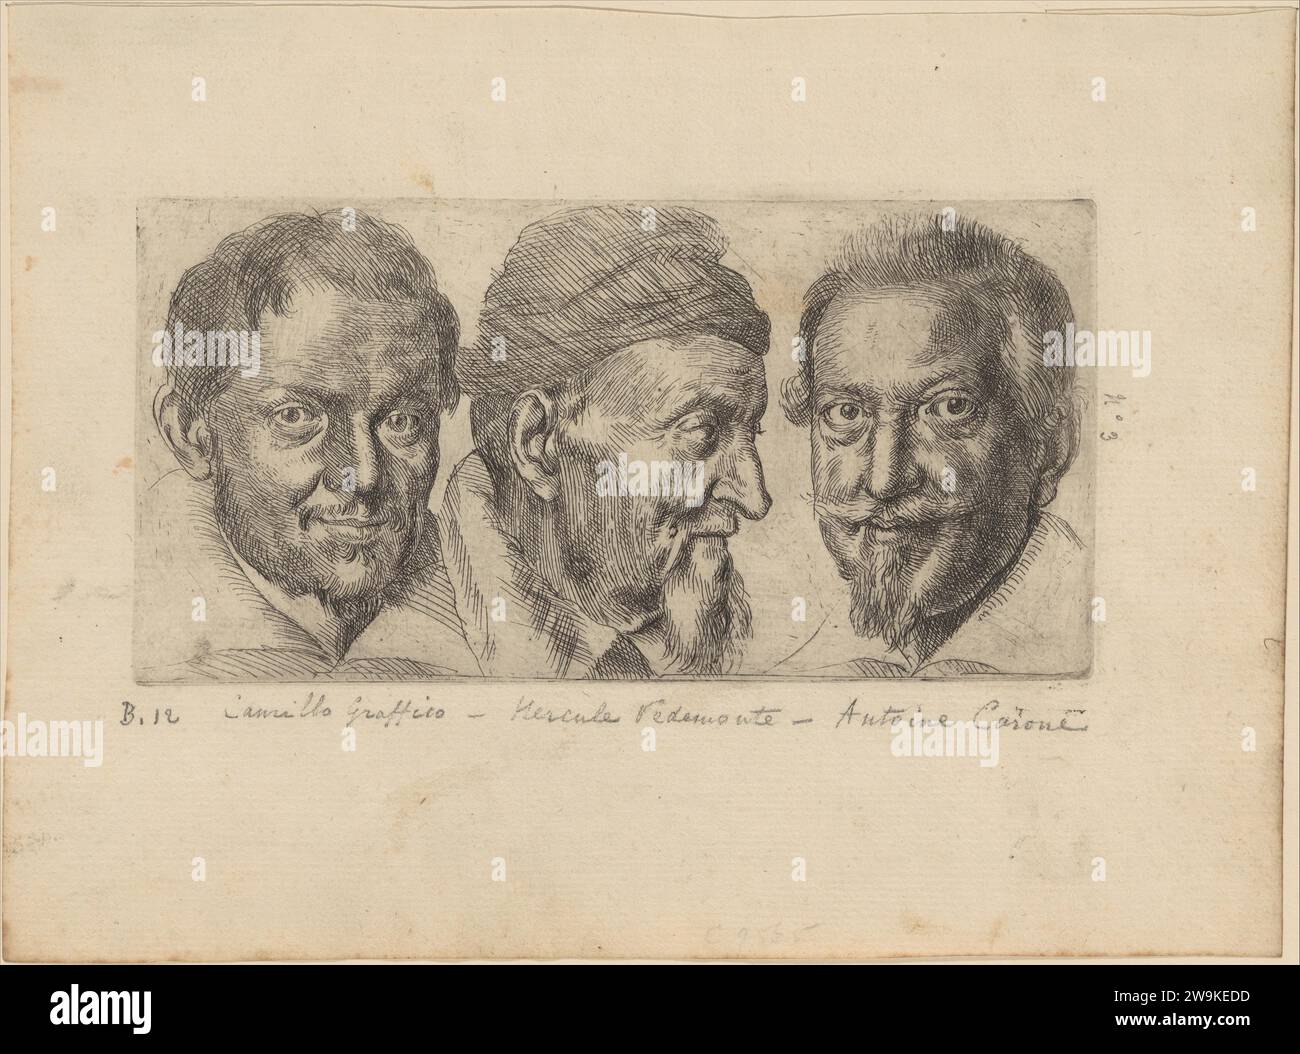 Three portraits possibly representing Camillo Graffico, Ercole Pedemonte and Antonio Carone 1926 by Ottavio Leoni (Il Padovano) Stock Photo